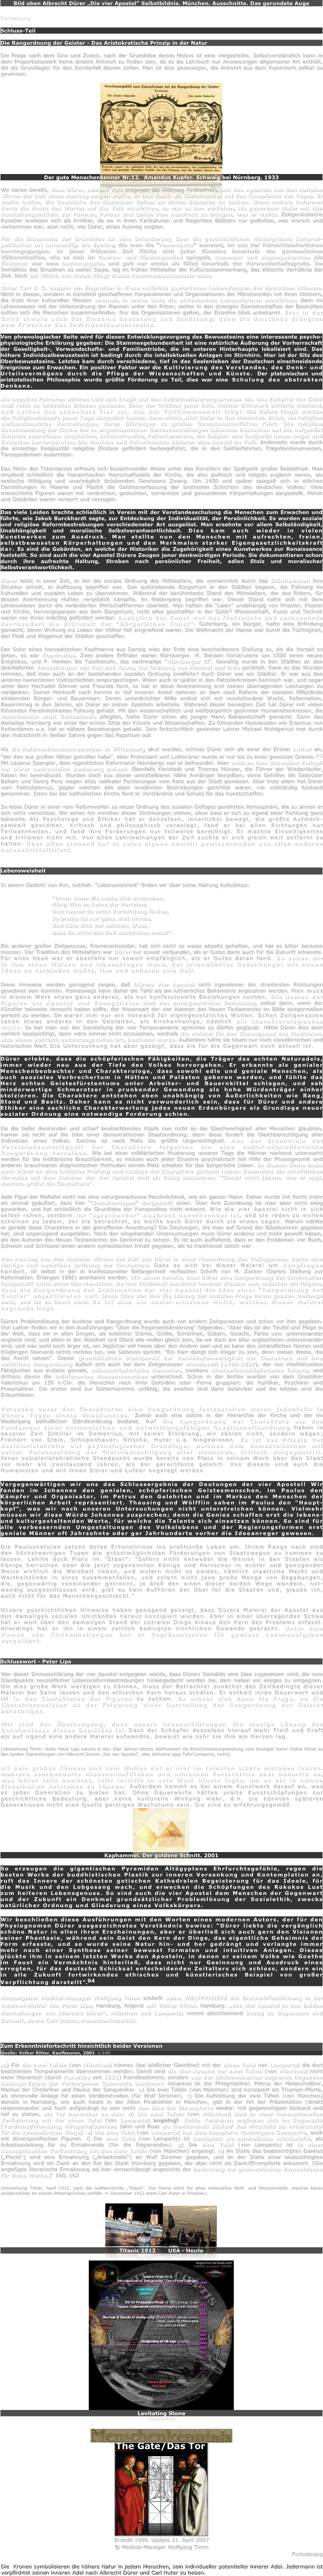 Bild oben Albrecht Dürer „Die vier Apostel“ Selbstbildnis. München. Ausschnitte. Das gerundete Auge

Fortsetzung

Schluss-Teil

Die Rangordnung der Geister - Das Aristokratische Prinzip in der Natur

Die Frage nach dem Sinn und Zweck, nach der Grundidee dieses Motivs ist eine vielgestellte. Selbstverständlich kann in dem Proportionswerk keine direkte Antwort zu finden sein, da es als Lehrbuch nur Anweisungen allgemeiner Art enthält, die als Grundlagen für den Sonderfall dienen sollen. Man ist also gezwungen, die Antwort aus dem Kunstwerk selber zu gewinnen.

￼
Der gute Menschenkenner Nr.12.  Amandus Kupfer. Schwaig bei Nürnberg. 1933

Wir sahen bereits, dass Dürer, seinem Volk entgegen der Meinung Pirkheimers, mit den Aposteln aus den sozialen Wirren der Zeit einen Ausweg zeigen wollte. Er trat damit als Sozialethiker auf den Kampfplatz des Tages. Er wollte helfen, die Geschicke des deutschen Volkes zu einem Besseren zu lenken. Wenn andere Reformer durch die Macht des Wortes auf das Volk einwirkten, so war es ihm verliehen, als geborener Maler mit den Darstellungsmitteln der Formen, Farben und Linien zum Ausdruck zu bringen, was er wollte. Zeitgenössische Künstler erwiesen sich als Kritiker, da sie in ihren Karikaturen und fliegenden Blättern nur geißelten, was morsch und verkommen war, aber nicht, wie Dürer, einen Ausweg zeigten.

Für die Erkenntnis der Grundidee ist eine Orientierung über die geschichtlichen Hintergründe kulturell-politischer Art notwendig. Die Epoche, die man die "romanische" benennt, ist aus der frühmittelalterlichen hervorgegangen. In jener früheren Zeit fühlte sich jeder Einzelne innerhalb der germanischen Völkerschaften, wie es sich im Gudrun- und Nibelungenlied spiegelt, stammes- und sippengebunden. Als Einzelner war man bedeutungslos und galt nur etwas als Glied innerhalb der Verwandschaftsgrade. Im Verhältnis des Einzelnen zu seiner Sippe, lag im frühen Mittelalter der Kulturzusammenhang, das ethische Verhältnis der Zeit. Noch bei Ullrich von Huten klingt dieses Stammesbewusstsein nach.

Unter Carl d. G. begann ein Eingreifen in diese natürlich gewordenen Lebensformen der deutschen Stämme. Nicht in diesen, sondern in künstlich geschaffenen Korporationen und Organisationen der Mönchsorden mit ihren Klöstern, die trotz ihrer kulturellen Mission ehemals in erster Linie die altdeutschen Lebensformen zerstörten; dann im Lehenswesen mit der Unterordnung der Mannen unter den Ritter; weiter in den strengen Gemeinschaften der Bauhütten sollten sich die Menschen zusammenfinden. Nur die Organisationen galten, der Einzelne blieb unbekannt. Erst in der Gotik erwarb auch der Einzelne Beachtung und Schätzung; denn die Umstände drängten zum Erwachen des Individualbewusstseins.

Von phrenologischer Seite wird für diesen Entwicklungsvorgang des Bewusstseins eine interessante psycho-physiologische Erklärung gegeben: Die Stammesgebundenheit ist eine natürliche Äußerung der Vorherrschaft der Geselligkeit-, Verwandschafts- und Familientriebe, die im unteren Hinterhaupte lokalisiert sind. Das höhere Individualbewusstsein ist bedingt durch die intellektuellen Anlagen im Stirnhirn. Hier ist der Sitz des Oberbewusstseins. Letztes kam durch verschiedene, tief in das Seelenleben der Deutschen einschneidende Ereignisse zum Erwachen. Ein positiver Faktor war die Kultivierung des Verstandes, des Denk- und Urteilsvermögens durch die Pflege der Wissenschaften und Künste. Der platonischen und aristotelischen Philosophie wurde größte Förderung zu Teil, dies war eine Schulung des abstrakten Denkens.

Als negative Faktoren wirkten Leid und Tragik auf den Individualisierungsprozess ein. Das Zeitalter der Gotik muß reich an leidvollen Erleben gewesen. Einer der Größten jener Zeit, Meister Ekkehard erklärte tröstend, daß Leiden das schnellste Tier sei, das zur Vollkommenheit trägt. Die tiefste Tragik werden die Religionskämpfe jener Tage ausgelöst haben; denn nichts sitzt tiefer in des Menschen Brust, als religiöse weltanschauliche Vorstellungen, deren Störungen zu großen Gewissenskonflikten führt. Die religiöse Bevormundung der Kirche der in altgermanischen Gottesvorstellungen lebenden Deutschen hat nie aufgehört Schmerz auszulösen. Inquisition, Scheiterhaufen, Folterkammern, die Galgen- und Radjustiz haben Angst und Entsetzen hervorgerufen. Die Henkers und Folterknechte bildeten eine Anzahl im Volk. Anderseits wurde durch die einseitige Religiosität religiöse Ekstase gefördert herbeigeführt, die in den Geißlerfahrten, Flagellantenunwesen, Tanzepedemien ausarteten.

Das Motiv des Totentanzes erfreute sich bezeichnender Weise unter den Künstlern der Spätgotik großer Beliebtheit. Man empfand schließlich die hierarchischen Herrschaftsziele der Kirche, die also politisch und religiös zugleich waren, als seelische Nötigung und unerträglich drückenden Gewissens Zwang. Um 1450 und später spiegelt sich in etlichen Darstellungen in Malerei und Plastik die Geistesverfassung der breitesten Schichten des deutschen Volkes: Viele menschliche Figuren waren mit verdrehten, geduckten, verrenkten und gewundenen Körperhaltungen dargestellt. Mimik und Gebärden waren verzerrt und verzogen.

Das viele Leiden brachte schließlich in Verein mit der Verstandesschulung die Menschen zum Erwachen und führte, wie Jakob Burckhardt sagte, zur Entdeckung der Individualität, der Persönlichkeit. Es wurden soziale und religiöse Reformbestrebungen verschiedenster Art ausgelöst. Man ersehnte vor allem Selbständigkeit, Unabhängigkeit und moralische Selbstverantwortlichkeit. Dies kam auch wieder in vielen Kunstwerken zum Ausdruck. Man stellte nun den Menschen mit aufrechten, freien, selbstbewussten Körperhaltungen und den Merkmalen starker Eigengesetzlichkeitskraft dar. Es sind die Gebärden, an welche der Historiker die Zugehörigkeit eines Kunstwerkes zur Renaissance feststellt. So sind auch die vier Apostel Dürers Zeugen jener denkwürdigen Periode. Sie dokumentieren schon durch ihre aufrechte Haltung, Streben nach persönlicher Freiheit, edlen Stolz und moralischer Selbstverantwortlichkeit.

Dürer lebte in einer Zeit, in der die soziale Ordnung des Mittelalters, die vornehmlich durch das Ständewesen ihre Struktur erhielt, in Auflösung begriffen war. Das aufstrebende Bürgertum in den Städten begann, die Führung im kulturellen und sozialen Leben zu übernehmen. Während der berühmteste Stand des Mittelalters, der des Ritters, für dessen Anerkennung Hutten vergeblich kämpfte, im Niedergang begriffen war. Dieser Stand hatte sich mit dem Lehenswesen durch die veränderten Wirtschaftformen überlebt. Was hatten die "Laien" unabhängig von Priester, Kloster und Kirche, hervorgegangen aus dem Bürgertum, nicht alles geschaffen in der Gotik? Wissenschaft, Kunst und Technik waren von ihnen mächtig gefördert worden. Bezüglich der Kunst war das fünfzehnte und sechszehnte Jahrhundert die Blütezeit der "Bürgerlichen Kunst". Gutenberg, ein Bürger, hatte eine Erfindung gemacht, deren Wirkung ins Leben der Völker tief eingreifend waren. Die Weltmacht der Hanse war durch die Tüchtigkeit, den Fleiß und Wagemut der Städter geschaffen.

Der Sohn eines hanseatischen Kaufmanns aus Danzig wies der Erde eine bescheidenere Stellung zu, als die Vorzeit es getan, es war Kopernikus. Zwei andere Erfinder waren Nürnberger. M. Behaim konstruierte um 1500 einen neuen Erdglobus, und P. Henlein die Taschenuhr, das nachmalige "Nürnberger Ei". Gewaltig wurde in den Städten an den überlieferten Vorstellungen von Zeit und Raum, der Ordnung von Himmel und Erde gerüttelt. Kann es das Wunder nehmen, daß man auch an der bestehenden sozialen Ordnung zweifelte? Auch Dürer war ein Städter. Er war aus den unteren namenlosen Volksschichten emporgestiegen. Wenn auch er später in den Patrizierkreisen heimisch war, und sogar unter dem Hochadel Gönner und Freunde fand, so hat er diese Anerkennung erst seinen überragenden Leistungen zu verdanken. Seiner Herkunft nach konnte er tief inneren Anteil nehmen an dem nach Reform der sozialen Mißstände strebenden Bürger- und Bauerntum. Deren unterdrückter Wille entlud sich mit revolutionärer Wucht, Reformation, Bauernkrieg in den Jahren, als Dürer an seinen Aposteln arbeitete. Während dieser bewegten Zeit hat Dürer mit vielen führenden Persönlichkeiten Fühlung gehabt. Mit den wissenschaftlich und weltbürgerlich gesinnten Humanistenkreisen, die Menschheits- statt Gottesideale pflegten, hatte Dürer schon als junger Mann Bekanntschaft gemacht. Denn das damalige Nürnberg war einer der ersten Sitze der Künste und Wissenschaften. Zu führenden Humanisten wie Erasmus von Rotterdamm u.a. hat er nähere Beziehungen gehabt. Sein fortschrittlich gesinnter Lehrer Michael Wohlgemut trat durch den Holzschnitt in derber Satyre gegen das Papsttum auf.

Als die Reformationsbestrebungen in Wittenberg akut wurden, schloss Dürer sich als einer der Ersten Luther an, "der ihm aus großen Nöten geholfen habe". Aber Protestant und Lutheraner wurde er nur bis zu einer gewissen Grenze.93  Mit Lazarus Spengler, dem eigentlichen Reformator Nürnbergs war er befreundet. Aber auch zu dem Schweizer Zwingli hat Dürer nachweislich Beziehung gehabt. Ebenfalls Karlstadt und Thomas Münzer, die Führer der Wiedertäufer, haben ihn beeindruckt. Wurden doch aus seiner unmittelbaren Nähe Anhänger derselben, seine Gehilfen die Gebrüder Beham und Georg Penz wegen allzu radikaler Forderungen vom Rate aus der Stadt gewiesen. Aber trotz allem hat Dürer vom Katholizismus, gegen welchen alle eben erwähnten Bestrebungen gerichtet waren, nie vollständig Abstand genommen. Denn bei der katholischen Kirche fand er Verständnis und Schutz für das Kunstschaffen.

So lebte Dürer in einer vom Reformwillen zu neuer Ordnung des sozialen Gefüges genährten Atmosphäre, die zu atmen er sich nicht verschloss. Wir sehen ihn inmitten dieser Strömungen stehen, ohne dass er sich zu irgend einer Richtung ganz bekannte. Als Psychologe und Ethiker hat er denselben, innerlichst bewegt, die größte Aufmerk-samkeit gewidmet. Kritisch und philosophisch veranlagt, fand er bei allen Richtungen nur Teilwahrheiten, und fand ihre Forderungen nur teilweise berechtigt. Er machte Einseitigkeiten und Irrtümer nicht mit. Von allen Lehrmeinungen der Zeit suchte er sich gleich weit entfernt zu halten. Über allen stehend hat er seine eigene Ansicht gewissermaßen aus allen anderen herauskristallisiert.


Lebensweisheit

In einem Gedicht von ihm, betitelt: "Lebensweisheit" finden wir über seine Haltung Aufschluss:

			"Drum wenn die Leute sich entzweien,
			Häng dich an keine der Parteien;
			Und kannst du nicht Vermittlung finden,
			So bleibe du nur ganz weit hinten,
			Und hüte dich vor solchem Wust,
			Dass du nicht das Bad austrinken musst".

Ein anderer großer Zeitgenosse, Riemenschneider, hat sich nicht so weise abseits gehalten, und hat es bitter bereuen müssen. Der Tradition des Mittelalters war Dürer nur soweit verbunden, als er Gutes darin auch für die Zukunft erkannte. Für alles Neue war er ebenfalls nur soweit empfänglich, als er Gutes daran fand. So sehen wir in ihm einen Weisen und lebensklugen Mann, der altbewährtes Gedankengut mit neuen Ideen zu verbinden wußte, ihm und anderen zum Heil.

Diese Hinweise werden genügend zeigen, daß Dürers vier Apostel nicht irgendeiner der streitenden Richtungen gewidmet sein konnten. Keineswegs kann daher die Tafel als ein lutherisches Bekenntnis angesehen werden. Man muss in diesem Werk etwas ganz anderes, als nur konfessionelle Beziehungen suchen. Die Namen der Figuren als Apostel und Evangelisten sind von untergeordneter Bedeutung, selbst dann, wenn der Künstler teilweise versucht haben sollte, der Wesensart der vier Autoren des Neuen Testamentes im Bilde einigermaßen gerecht zu werden. Sie waren ihm nur ein Vorwand für eigengesetzliches Wollen. Schon Zeitgenossen sahen etwas anderes in den Gestalten, als Kirchenheilige, nämlich ein charakterologisches Motiv. So hat man von der Darstellung der vier Temperamente sprechen zu dürfen geglaubt. Hätte Dürer dies aber wirklich beabsichtigt, dann wäre einmal nicht einzusehen, weshalb die Malerei für den Sitzungssaal des Stadtrates, also einem politisch bedeutungsvollen Ort, bestimmt wurde. Außerdem hätte sie heute nur noch künstlerischen und historischen Wert. Die Untersuchung hat aber gezeigt, dass sie für die Gegenwart noch aktuell ist.

Dürer erlebte, dass die schöpferischen Fähigkeiten, die Träger des echten Naturadels, immer wieder neu aus der Tiefe des Volkes hervorgehen. Er erkannte als genialer Menschenbeobachter und Charakterologe, dass sowohl edle und geniale Menschen, als auch asoziales Verbrechertum in Hütten und Palästen geboren werden, und fühlte das Herz echten Geistesfürstentums unter Arbeiter- und Bauernkittel schlagen, und sah minderwertige Schmarotzer in prunkender Gewandung als hohe Würdenträger einher stolzieren. Die Charaktere entstehen eben unabhängig von Äußerlichkeiten wie Rang, Stand und Besitz. Daher kann es nicht verwunderlich sein, dass für Dürer und andere Ethiker eine sachliche Charakterwertung jedes neuen Erdenbürgers als Grundlage neuer sozialer Ordnung eine notwendige Forderung schien.

Da die tiefer denkenden und scharf beobachtenden Köpfe nun nicht an die Gleichwertigkeit aller Menschen glaubten, kamen sie nicht auf die Idee einer demokratischen Staatsordnung; denn diese fordert die Gleichberechtigung aller Individuen eines Volkes. Solches ist nach Plato die größte Ungerechtigkeit. Aus der Erkenntnis der Verschiedenwertigkeit der Charaktere folgerten sie eine sozial-aristokratische Rangordnung derselben. Wie bei einer militärischen Musterung unserer Tage die Männer nackend untersucht werden für die militärische Brauchbarkeit, so müsste auch jeder Einzelne psychiatrisch mit Hilfe der Physiognomik und anderen brauchbaren diagnostischen Methoden seinen Platz erhalten für das bürgerliche Leben. In diesem Sinne muss auch Dürer an eine kritische Prüfung und Auslese der Charaktere gedacht haben. Besonders die schriftlichen Hinweise auf dem Rahmen der vier Apostel sind als Beleg anzusehen: "Glaubt nicht jedem, was er sagt, sondern prüfet die Charaktere".

Jede Figur der Maltafel wirkt wie eine naturgewachsene Persönlichkeit, wie ein ganzer Mann. Daher wurde mit Recht mehr als einmal geäußert, dass hier "Charaktertypen" dargestellt seien. Über ihre Zuordnung ist man aber nicht einig geworden, und hat schließlich die Grundidee der Komposition nicht erkannt. Wie die vier Apostel nicht in sich selber ruhen, sondern ihr "sprechender" Ausdruck unverkennbar ist, und sie reden zu wollen scheinen zu jedem, der sie betrachtet, so wollte auch Dürer durch sie etwas sagen. Warum wählte er gerade diese Charaktere in der getroffenen Anordnung? Die Deutungen, die man auf Grund der Bibelautoren gegeben hat, sind ungenügend ausgefallen. Nach den eingehenden Untersuchungen muss Dürer anderes und mehr gewollt haben, als den Autoren des Neuen Testamentes ein Denkmal zu setzen. Es ist auch auffallend, dass er den Emblemen von Buch, Schwert und Schlüssel einen andern symbolischen Inhalt gegeben, als es traditionell üblich war.

Den Ausweg aus den sozialen Wirren der Zeit sah Dürer in einer Neuordnung des Volksganzen, durch eine richtige und natürliche Ordnung der Charaktere. Dass es sich bei dieser Malerei um Rangfragen handelt, ist selbst in der in konfessioneller Befangenheit verfassten Schrift von M. Zucker (Dürers Stellung zur Reformation. Erlangen 1866) anerkannt worden. Wir sahen bereits, dass Dürer eine Rangordnung der Schönheiten festgestellt hatte unter den Menschen. Da ihm Schönheit Ausdruck inneren Wesens war, müssten wir folgern, dass die Rangordnung der Schönheiten der vier Apostel die Idee einer "Rangordnung der Geister" objektivieren soll. Diese Idee war ihm die Lösung der sozialen Frage ihrem ganzen Umfange nach, und ist es heute noch. Es ist also ein sozial-ethisches Motiv, welches dieser Malerei zugrunde liegt.

Dürers Problemlösung der Auslese und Rangordnung wurde auch von andern Zeitgenossen und schon vor ihm gegeben. Von Luther finden wir in den Ausführungen "Über die Regimentsänderung" folgendes: "Aber das ist der Teufel und Plage in der Welt, dass wir in allen Dingen, als leiblicher Stärke, Größe, Schönheit, Gütern, Gesicht, Farbe usw. untereinander ungleich sind; und allein in der Weisheit und Glück alle wollen gleich sein, da wir doch am aller ungleichsten untereinander sind, und was wohl noch ärger ist, ein Jeglicher will hierin über den Andern sein und es kann den schändlichen Narren und Klüglingen Niemand nichts rechtes tun, wie Salomon spricht. "Ein Narr düngt sich klüger zu sein, denn sieben Weise, die das Recht setzen". Dieser grundsätzliche Standpunkt der Verschiedenwertigkeit der Charaktere und ihre natürliche Rangordnung äußert sich auch bei dem Zeitgenossen Machiavelli (1469-1527), der von intellektuellen Fähigkeiten aus erstens geniale, selbstschöpferische Menschen, zweitens nichtselbstschöpferische Talente, und drittens davon die indifferenten Massenmenschen unterschied. Schon in der Antike wurden von dem Gnostiker Valentinus um 150 n.Chr. die Menschen nach ihrer Gottnähe oder -Ferne gruppiert: die Hykliker, Psychiker und Pneumatiker. Die ersten sind zur Gotterkenntnis unfähig, die zweiten sind darin belehrbar und die letzten sind die Erleuchteten.

Versuche unter den Charakteren eine Rangordnung festzustellen waren jedenfalls in Dürers Tagen nichts Unbekanntes. Zumal auch eine solche in der Hierarchie der Kirche und der im Niedergang befindlichen Ständeordnung bestand. Auf die Rangordnung der Charaktere als das Fundament einer harmonischen und entwicklungsfähigen Gesellschaftsordnung haben in neuerer Zeit Schiller im Demetrius, mit seiner Erklärung, wir zählen nicht, sondern wägen; Freiherr von Stein, Schopenhauer, Nitsche, Huter u.a. hingewiesen. Es ist das Prinzip der Sozialaristokratie auf psychologischer Grundlage, welches dem demokratischen mit seiner Voraussetzung der Gleichberechtigung aller Menschen, kritisch entgegentritt. Jener sozialaristokratische Standpunkt wurde bereits von Plato in seinem Werk über den Staat vor mehr als zweitausend Jahren, als der gerechteste gelehrt. Von diesem sind auch die Humanisten und mit ihnen Dürer und Luther angeregt worden.

Vergegenwärtigen wir uns das Schlussergebnis der Deutungen der vier Apostel! Wir fanden im Johannes den genialen, schöpferischen Geistesmenschen, im Paulus den Kämpfer und Organisator, im Petrus den Gelehrten und im Markus den Menschen der körperlichen Arbeit repräsentiert. Thausing und Wölfflin sahen im Paulus den "Haupt-kopf", was wir nach unseren Untersuchungen nicht unterstreichen können. Vielmehr müssen wir diese Würde Johannes zusprechen; denn die Genies schaffen erst die lebens- und kulturgestaltenden Werte, für welche die Talente sich einsetzen können. So sind für alle verbessernden Umgestaltungen des Volkslebens und der Regierungsformen erst geniale Männer oft Jahrzehnte oder gar Jahrhunderte vorher die Ideeanreger gewesen.

Die Paulusnaturen setzen deren Erkenntnisse ins praktische Leben um. Ihrem Range nach sind den höchstwertigen Typen die grösstmöglichsten Förderungen von Staatswegen zu kommen zu lassen. Lehrte doch Plato im "Staat": "Sofern nicht entweder die Weisen in den Staaten als Könige herrschen oder die jetzt sogenannten Könige und Herrscher in echter und genügender Weise wirklich die Weisheit lieben, und wofern nicht so beides, nämlich staatliche Macht und Weisheitsliebe in eines zusammenfallen, und sofern nicht jene große Menge von Begabungen, die, gegenwärtig voneinander getrennt, je bloß den einen dieser beiden Wege wandeln, not-wendig ausgeschlossen wird, gibt es kein Aufhören der Übel für die Staaten und, glaube ich, auch nicht für das Menschengeschlecht."

Unsere geschichtlichen Hinweise haben genügend gezeigt, dass Dürers Malerei der Apostel aus den damaligen sozialen Umständen heraus konzipiert wurden. Aber in einer überragenden Schau hat er weit über den damaligen Stand der sozialen Dinge hinaus den Kern des Problems erfasst. Allerdings hat er ihn in einem zeitlich bedingten kirchlichen Gewande gebracht. Unter dem Namen von Kirchenheilungen hat er Repräsentanten für gewisse Lebensaufgaben vorgeführt.


Schlusswort - Peter Lips

Wer dieser Sinneserklärung der vier Apostel entgegnen würde, dass Dürers Gemälde eine Idee zugewiesen wird, die vom Standpunkte neuzeitlicher Lebensreformbestrebungen hineingedacht worden sei, dem haben wir einiges zu entgegnen. Um dies große Werk würdigen zu können, muss der Betrachter zunächst das Zeitbedingte dieser Malerei bei Seite lassen und den ethischen Kern heraus schälen. Er enthält ihren Dauerwert und ist in den Charakteren der Figuren zu suchen. Es erhebt sich dann die Frage, ob die Charakteranalysen zu der Folgerung einer Darstellung der Rangordnung der Geister berechtigen.

Wir sind der Überzeugung, dass unsere Ideenerklärungen die einzige Lösung des Geheimnisses dieses Gemäldes ist. Dass der Schöpfer desselben hierauf mehr Fleiß und Kraft als auf irgend eine andere Malerei aufwandte, beweist wie sehr sie ihm am Herzen lag. 

[Anmerkung Timm: Autor Peter Lips kannte in den 30er Jahren letztes Jahrhundert die Entschlüsselungsleistung vom heutigen Autor Volker Ritter zu den beiden Darstellungen von Albrecht Dürers „Die vier Apostel“, also inklusive eine Tafel Lempertz, nicht].

All sein großes Können und sein Wollen hat er hier im reinsten Lichte erstehen lassen. Mehrere Jahrhunderte wissenschaftlichen und ethischen Fortschritts aber bedurfte es, was Dürer teils bewusst, teils intuitiv in sein Werk hinein legte, um es bis in seinen Einzelheiten verstehen zu können. Außerdem kommt es bei einem Kunstwerk darauf an, was es jeder Generation zu bieten hat. Ohne Dauerwerte hätten uralte Kunstschöpfungen nur geschichtliche Bedeutung, aber keine kulturelle Wirkung mehr, d.h. sie könnten späteren Generationen nicht eine Quelle geistigen Wachstums sein. Sie sind es erfahrungsgemäß.
￼
Kaphammel. Der goldene Schnitt. 2001

So erzeugen die gigantischen Pyramiden Altägyptens Ehrfurchtsgefühle, regen die besten Werke der buddhistischen Plastik zur inneren Versenkung und Kontemplation an, ruft das Innere der schönsten gotischen Kathedralen Begeisterung für das Ideale, für die Musik und den Lobgesang wach, und erwecken die Schöpfungen des Rokokos Lust zum heiteren Lebensgenuss. So sind auch die vier Apostel dem Menschen der Gegenwart und der Zukunft ein Denkmal grundsätzlicher Problemlösung der Sozialethik, zwecks natürlicher Ordnung und Gliederung eines Volkskörpers.

Wir beschließen diese Ausführungen mit den Worten eines modernen Autors, der für den Physiognomen Dürer ausgezeichnetes Verständnis bewies: "Dürer liebte die vergänglich schöne Natur in allen ihren Erscheinungen, aber er überließ sich auch gern den Visionen seiner Phantasie, während sein Geist den Kern der Dinge, das eigentliche Geheimnis der Form erfasste, und so wurde seine Natur hin- und her gedrängt und verlangte immer mehr nach einer Synthese seiner bewusst formalen und intuitiven Anlagen. Dieses glückte ihm in seinem letzten Werke den Aposteln, in denen er seinem Volke wie Goethe im Faust ein Vermächtnis hinterließ, dass nicht nur Gesinnung und Ausdruck eines erregten, für das deutsche Schicksal entscheidenden Zeitalters sich schloss, sondern ein in alle Zukunft fortwirkendes ethisches und künstlerisches Beispiel von großer Verpflichtung darstellt".94

Herausgeber Medical-Manager Wolfgang Timm schließt seine WELTPRMIERE der Erstveröffentlichung in der Internet-Matrix von Peter Lips, Hamburg, folgend mit Volker Ritter, Hamburg: „Die vier Apostel in den beiden Darstellungen von Albrecht Dürer“, München und Lempertz; nimmt abschliessend Bezug zu Gegenwart und Zukunft, sowie Carl Huters Menschenkenntnis.


Zum Erkenntnisfortschritt hinsichtlich beider Versionen 
Quelle: Volker Ritter, Kaufbeuren, 2001. s.149.

„a) Für die zwei Tafeln (von München) können (bei bildlicher Gleichheit mit der einen Tafel von Lempertz) die dort bestimmten Temperamente übernommen werden. Damit sind die Vier Apostel der zwei Tafeln (von München) nicht  mehr literarisch (durch Panofsky seit 1931) fremdbestimmt, sondern aus der bildimmanenten zugrunde liegenden Aussage-Ebene der Verborgenen Geometrie bestimmt: Johannes ist der Phlegmatiker, Petrus der Melancholiker, Markus der Choleriker und Paulus der Sanguiniker. b) Die zwei Tafeln (von München) sind konzipiert als Triumph-Pforte, als ehrenvolle Anlage für einen Verdienstvollen (für Wolf Stromer). c) Die Aufstellung der zwei Tafeln (von München) damals in Nürnberg, wie auch heute in der Alten Pinakothek in München, gibt in der Art der Präsentation (direkt nebeneinander und hoch aufgehängt zu sein nicht den Sinn der Ehrenpforte wieder: mit gegenseitigem Abstand und tief zu stehen, als Tor benutzbar zu sein. d) Die zwei Tafeln (von München) sind in einer konzeptionellen Verflechtung mit der einen Tafel (von Lempertz) angelegt. Beide Versionen ergänzen sich im Gegensatz (Verdienst/Mahnung; Allegorie/Symbol; Jakin und Boas als flankierende Säulen/ das Mittelbild als Arbeitstafel für die symbolischen Wege). e) Die eine Tafel (von Lempertz) hat eine komplette Verborgene Geometrie, auch mit dürerspezifischen Figuren. f) Die eine Tafel (von Lempertz) ist konzipiert als symbolische Arbeitstafel, als Arbeitsanleitung für zu Ermahnende (für die Regierenden). g) Die eine Tafel (von Lempertz) ist in einer konzeptionellen Verflechtung mit den zwei Tafeln (von München) angelegt. h) An Stelle des beabsichtigten Dankes („Pforte“) wird eine Ermahnung („Arbeitstafel“) an Wolf Stromer gegeben, und an der Stelle einer beabsichtigten Ermahnung wird ein Dank an den Rat der Stadt Nürnberg gegeben, der aber nicht als Dank/Ehrenpforte ankommt. (Die angefügte literarische Ermahnung sei hier vernachlässigt angesichts der Bedeutung der geometrischen Symbolebene für diese Werke.)“ 160, 162

(Anmerkung Timm: April 1912, sank die weltberühmte „Titanic“. Der Name steht für altes materielles Welt- und Menschenbild, welches heute unübersehbar an seinen Widersprüchen zerfällt. 4. Dezember 1912 starb Carl Huter in Dresden).

￼￼
Titanic 1912       USA - Heute

￼
Levitating Stone
(Hinzugefügt)
￼
￼
Erstellt 1999. Update 21. April 2007
© Medical-Manager Wolfgang Timm
Fortsetzung

Die  Kronen symbolisieren die höhere Natur in jedem Menschen, sein individueller potentieller innerer Adel. Jedermann ist verpflichtet seinen inneren Adel nach Albrecht Dürer und Carl Huter zu heben.